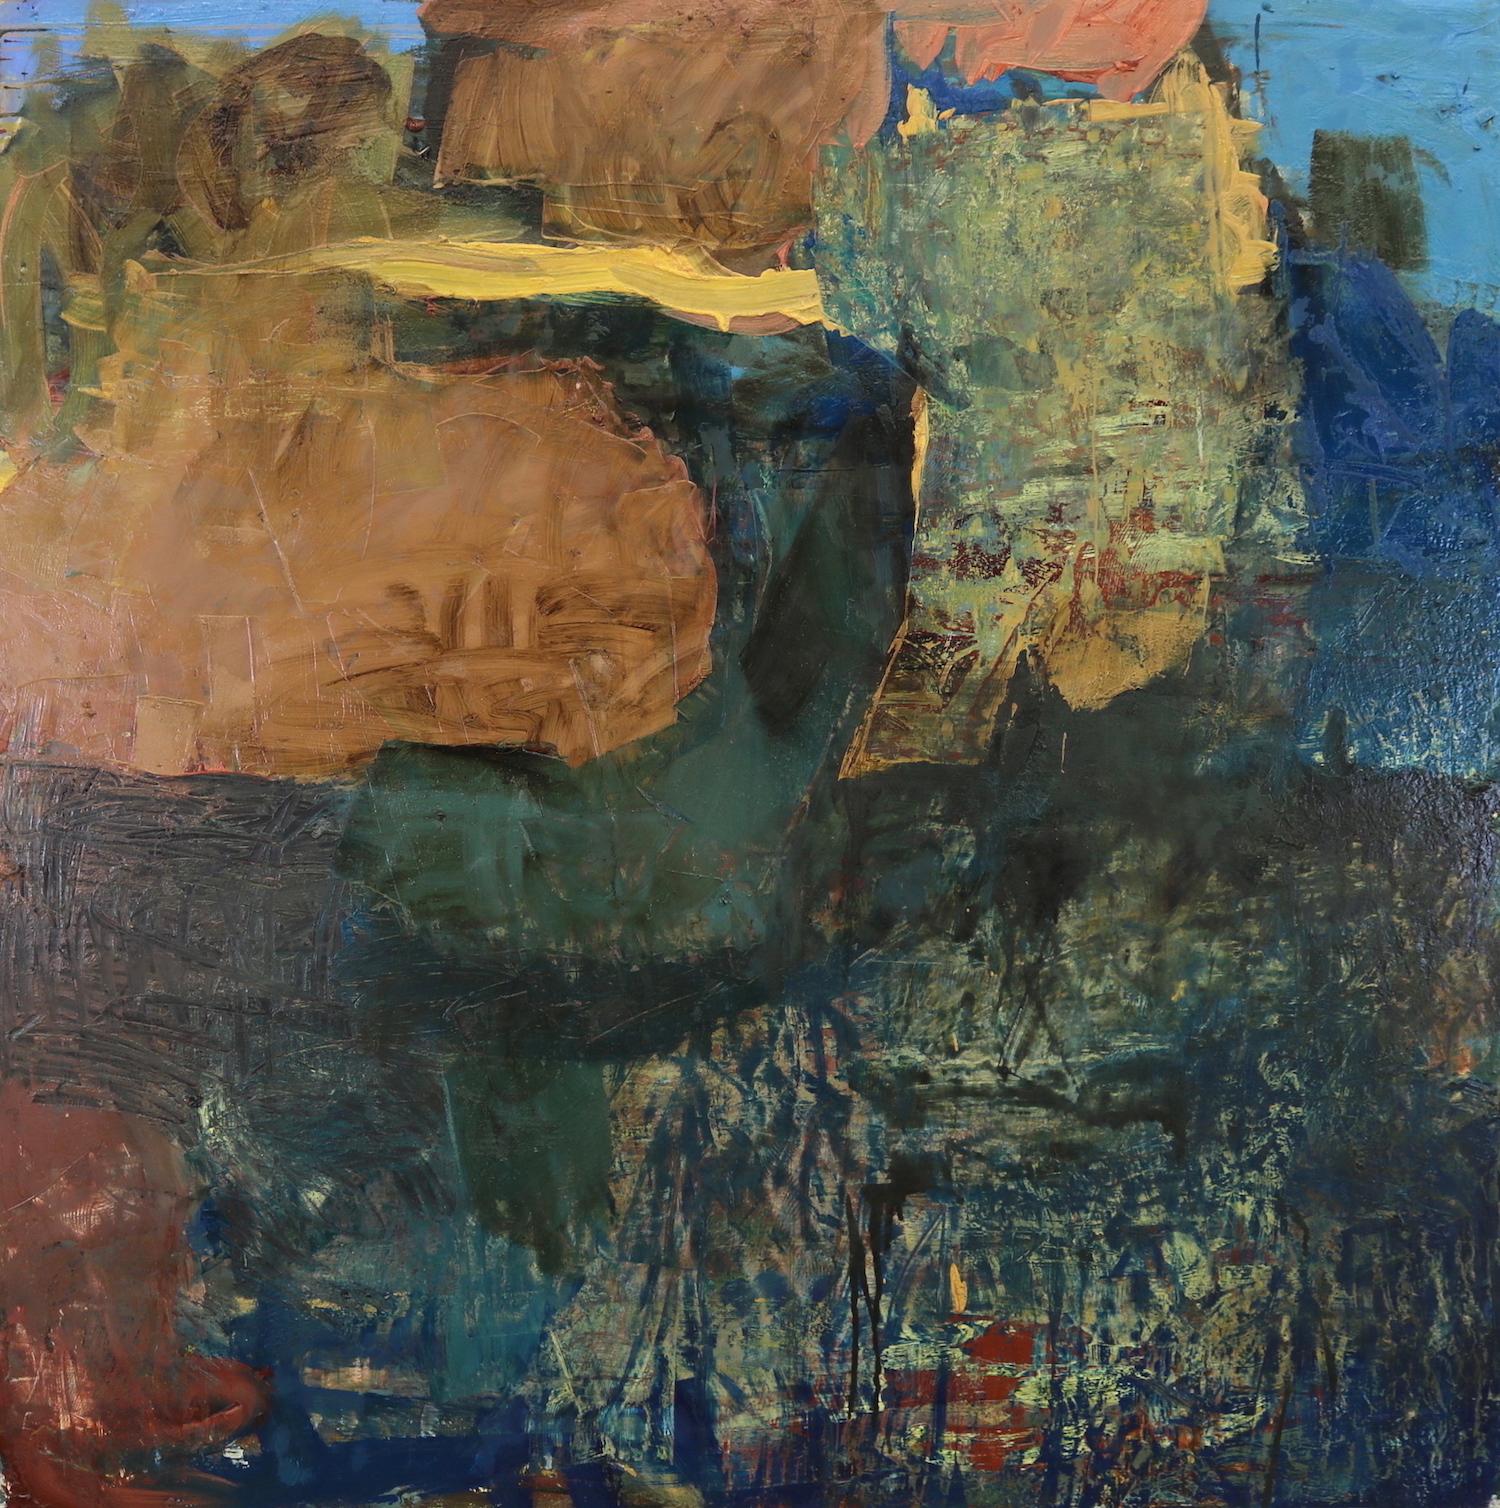 Abstract Painting Leslie Zelamsky - « Point of Departure 2 », peinture abstraite, bleue, verte, rose, technique mixte